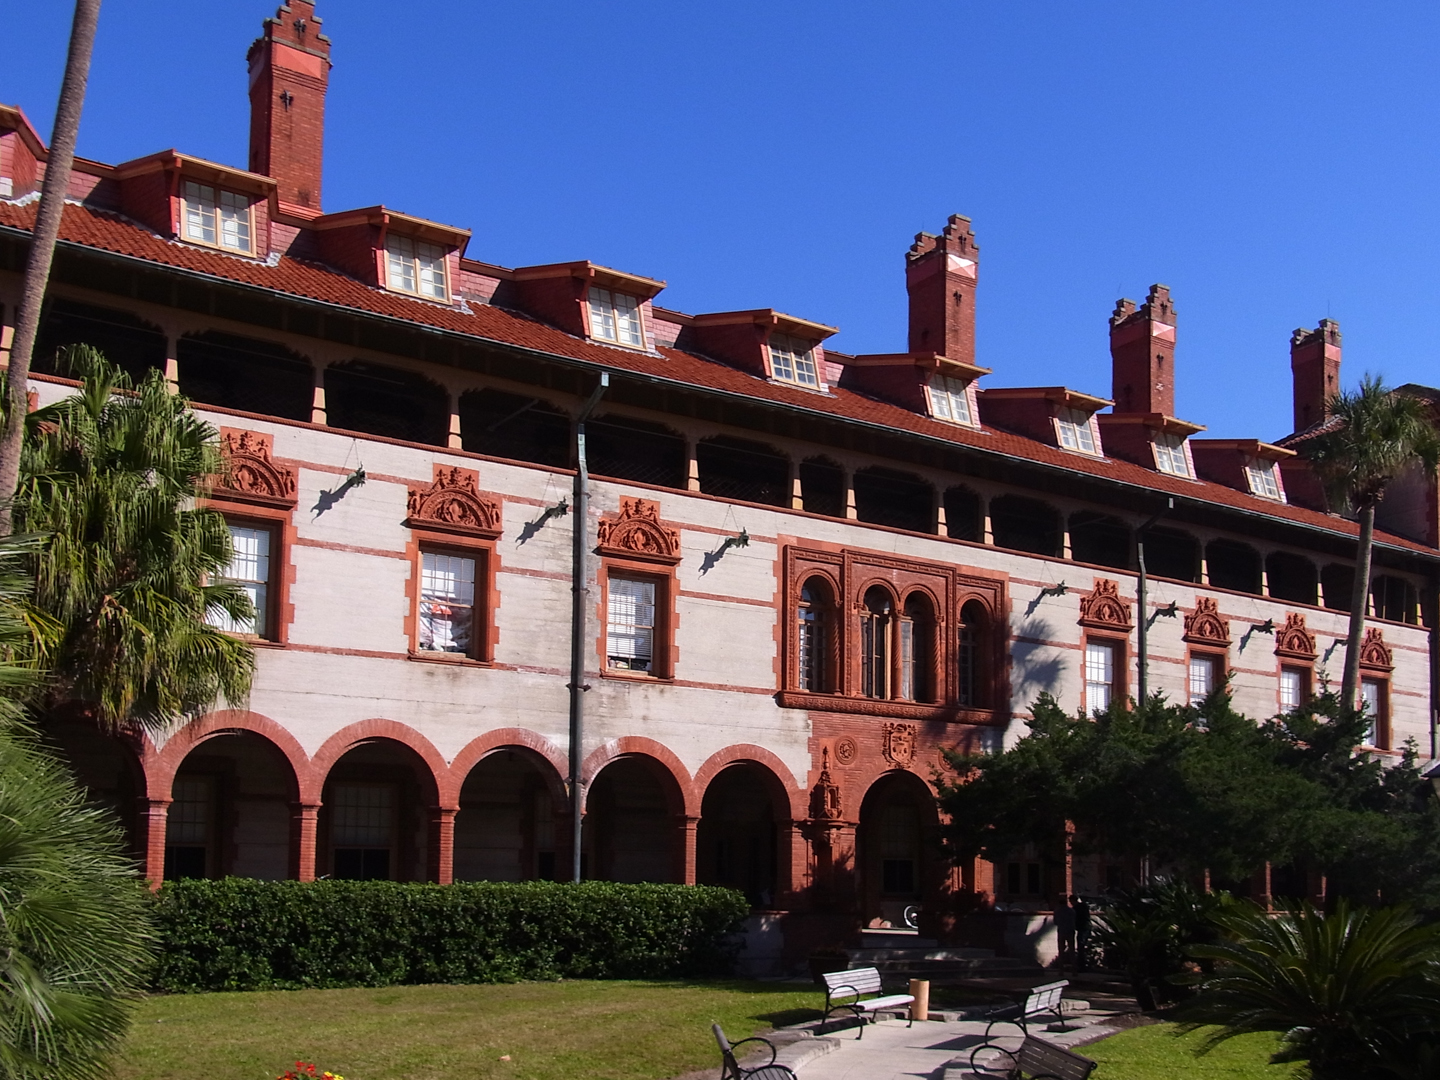 Ponce de Leon - Flagler College